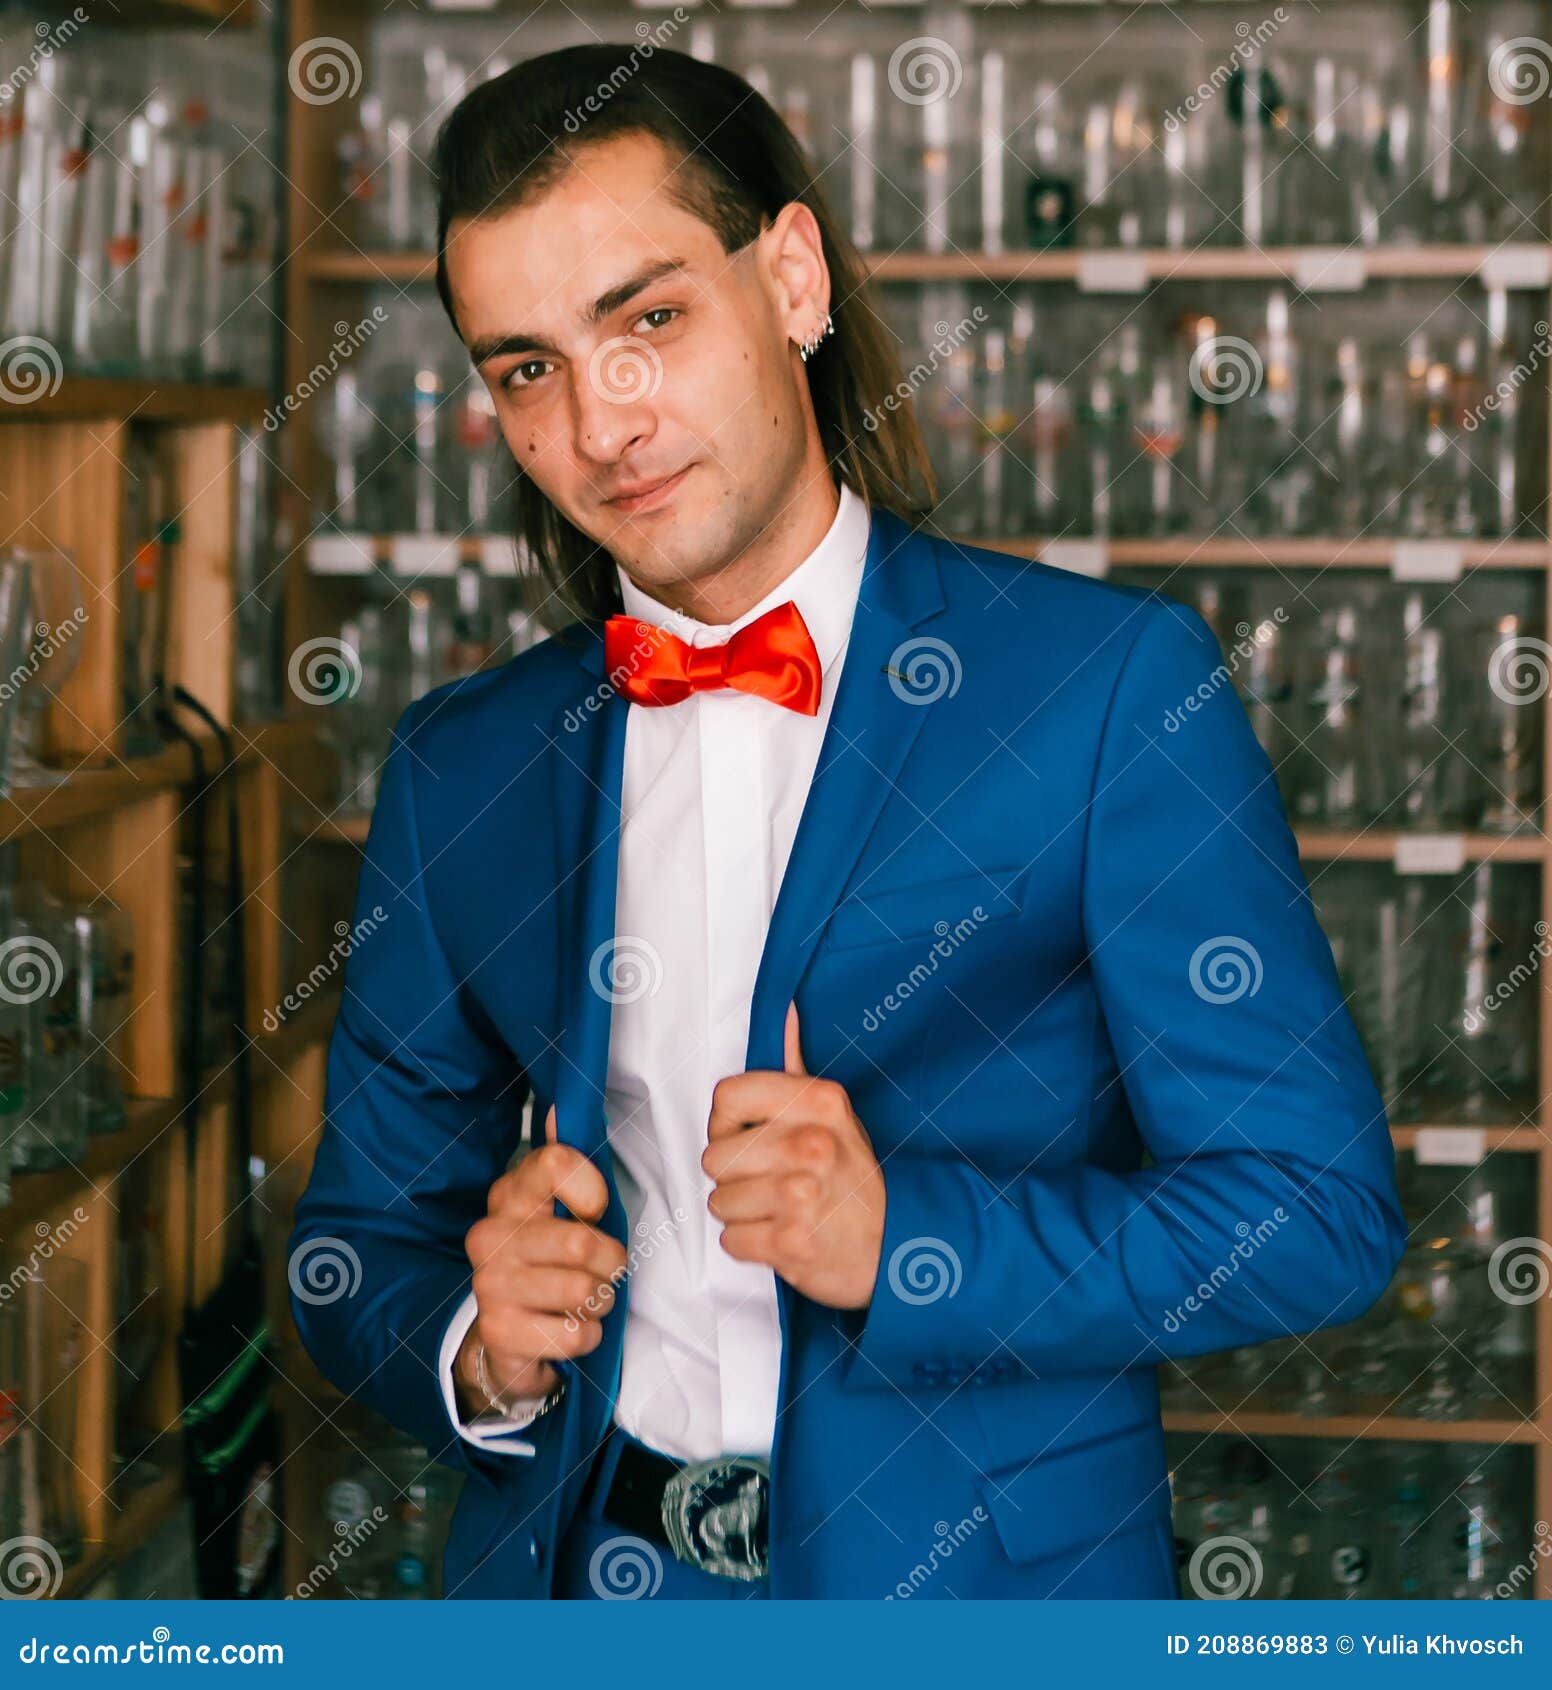 Retrato De Joven Guapo Hombre En Traje Azul Con Pajarita Roja. Imagen de archivo - Imagen ropa, groomsmen: 208869883